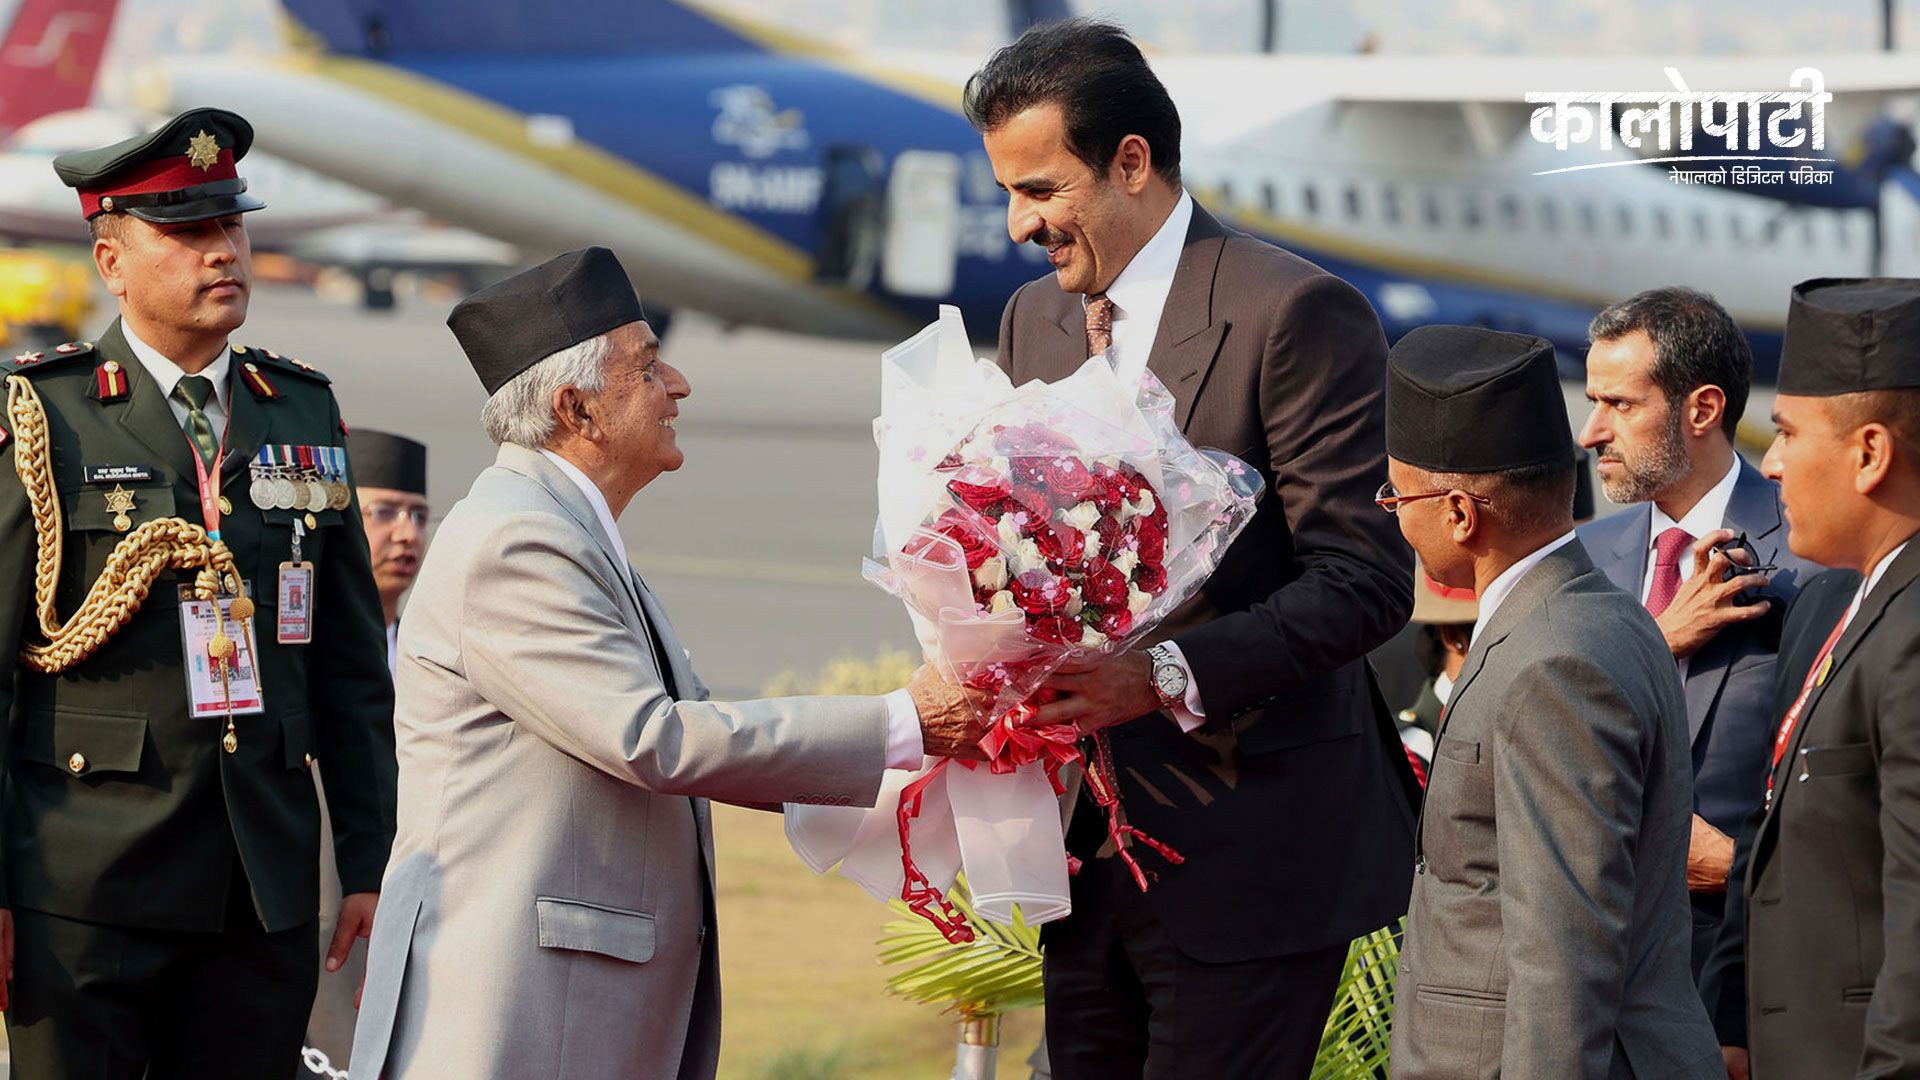 कतारका अमिर नेपालमा, राष्ट्रपति पौडेलबाट स्वागत…(फोटो फिचर)